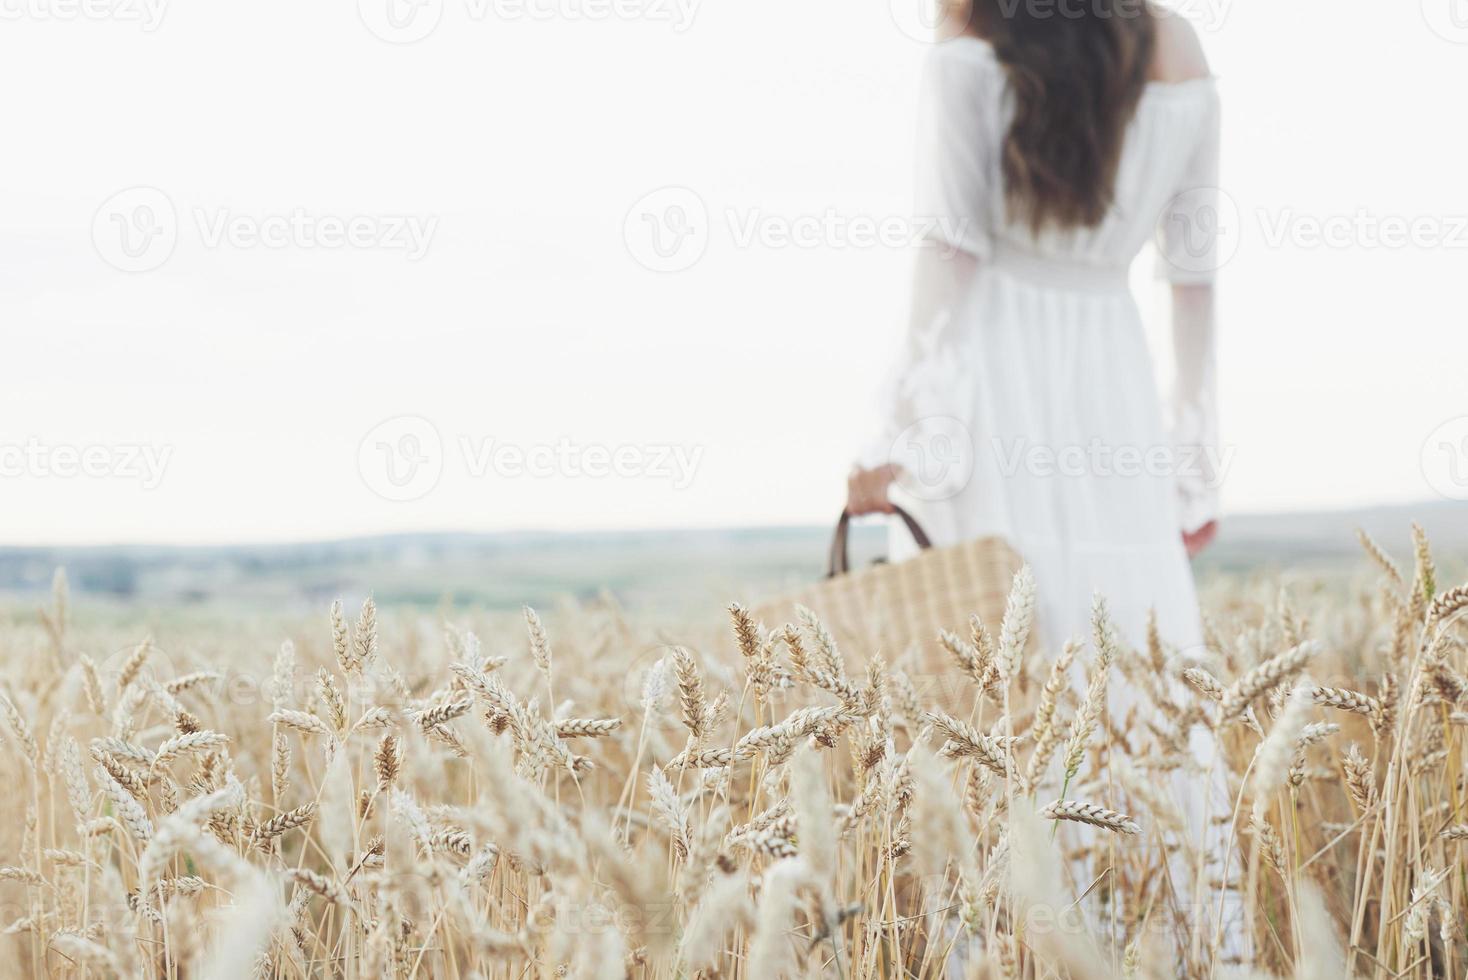 junges sensibles Mädchen im weißen Kleid posiert in einem Feld aus goldenem Weizen foto